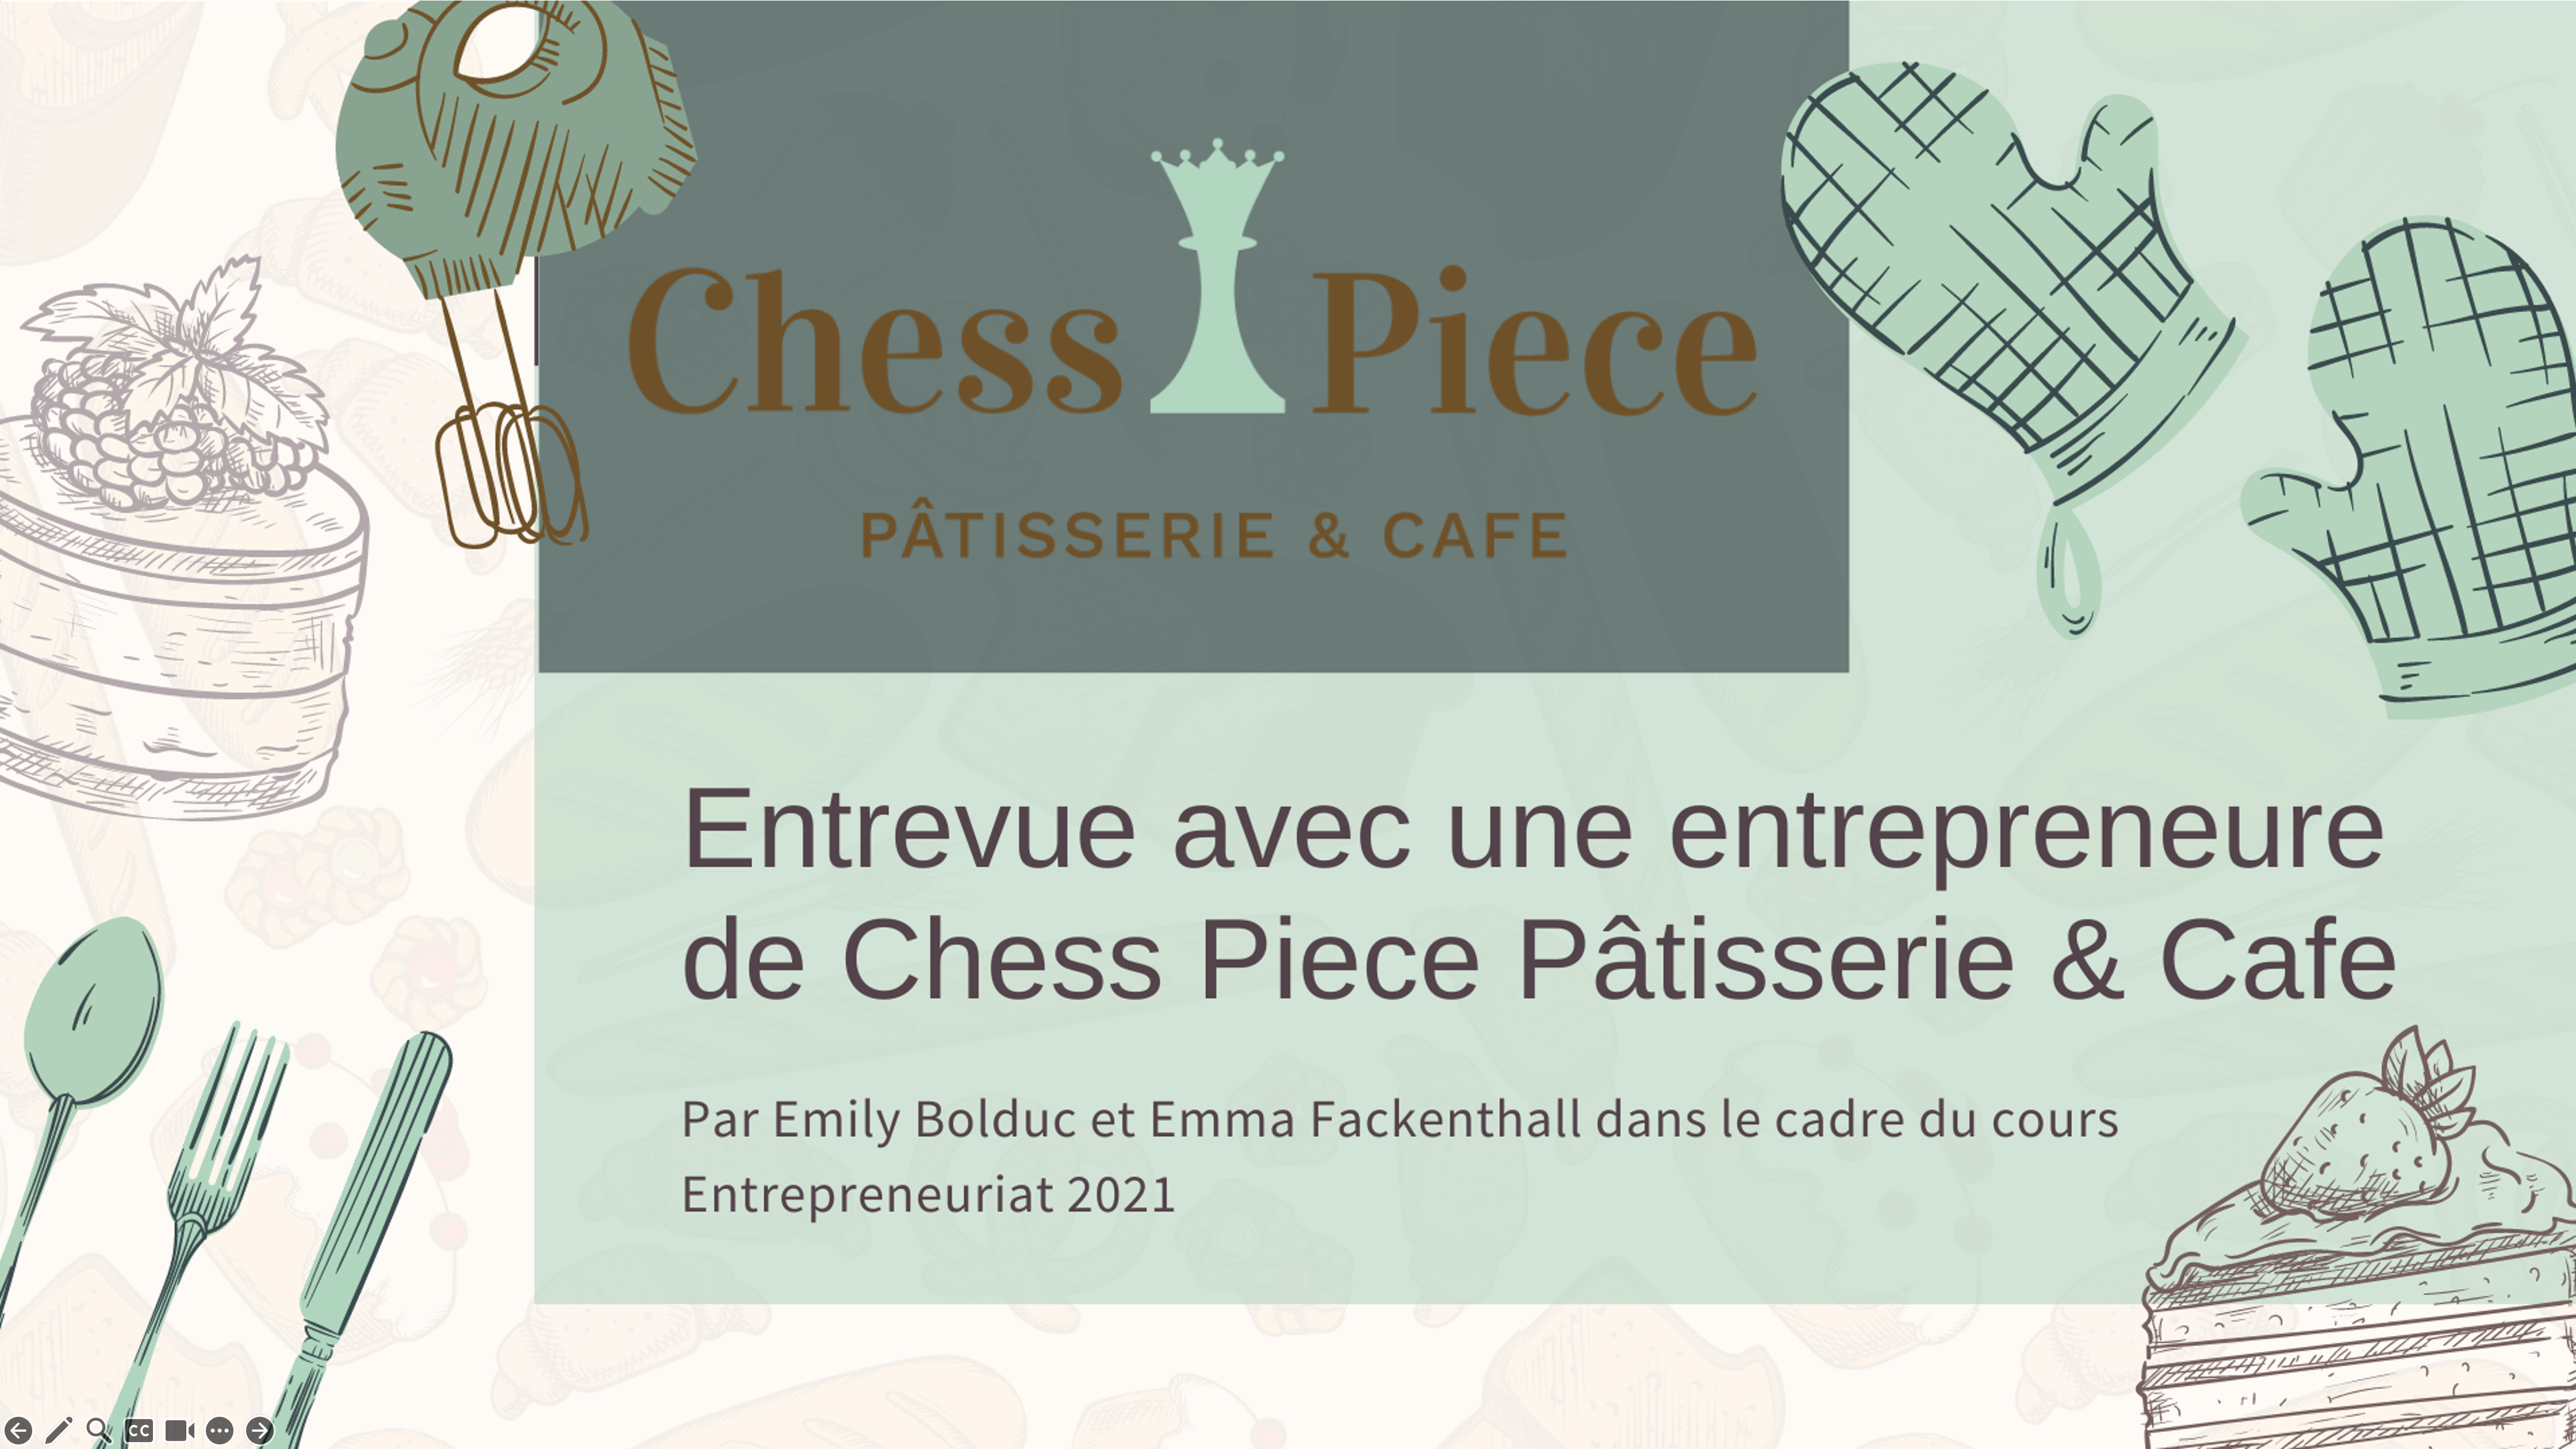 2020 ENPR12 Entrevue avec une entrepreneure de Chess Piece Pâtisserie & Café